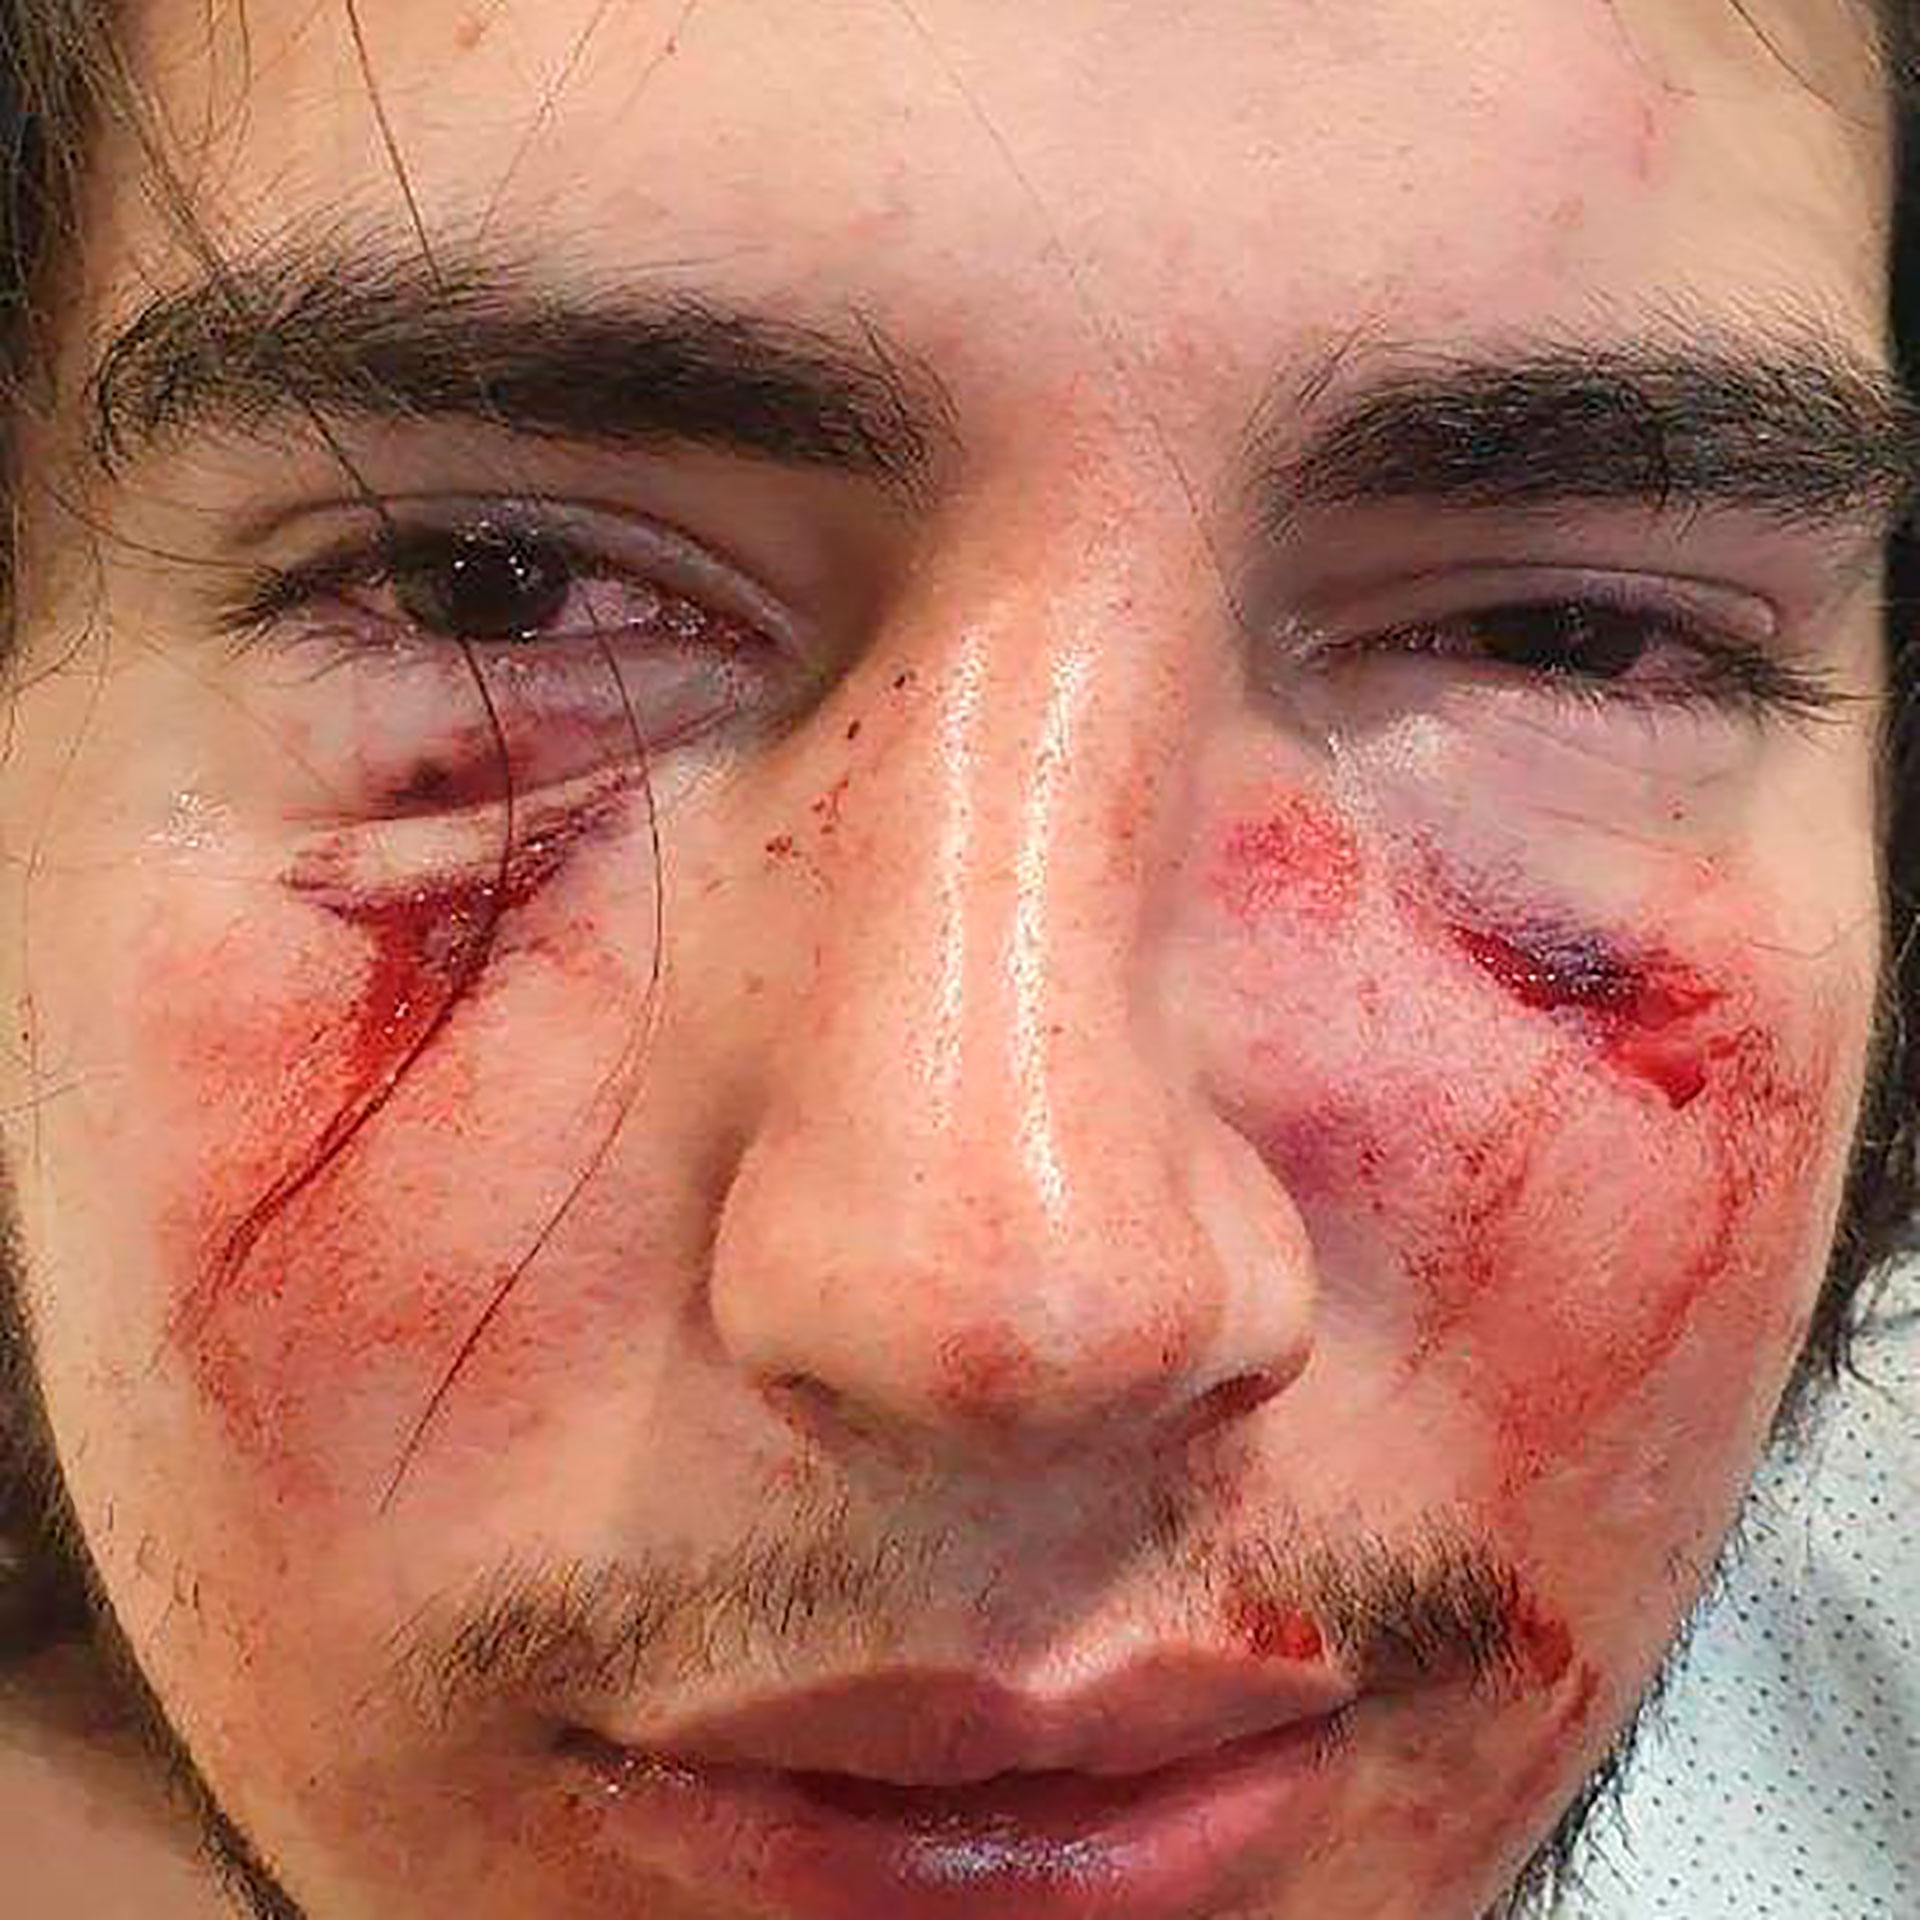 La foto de Lautaro Insúa tras la brutal golpiza